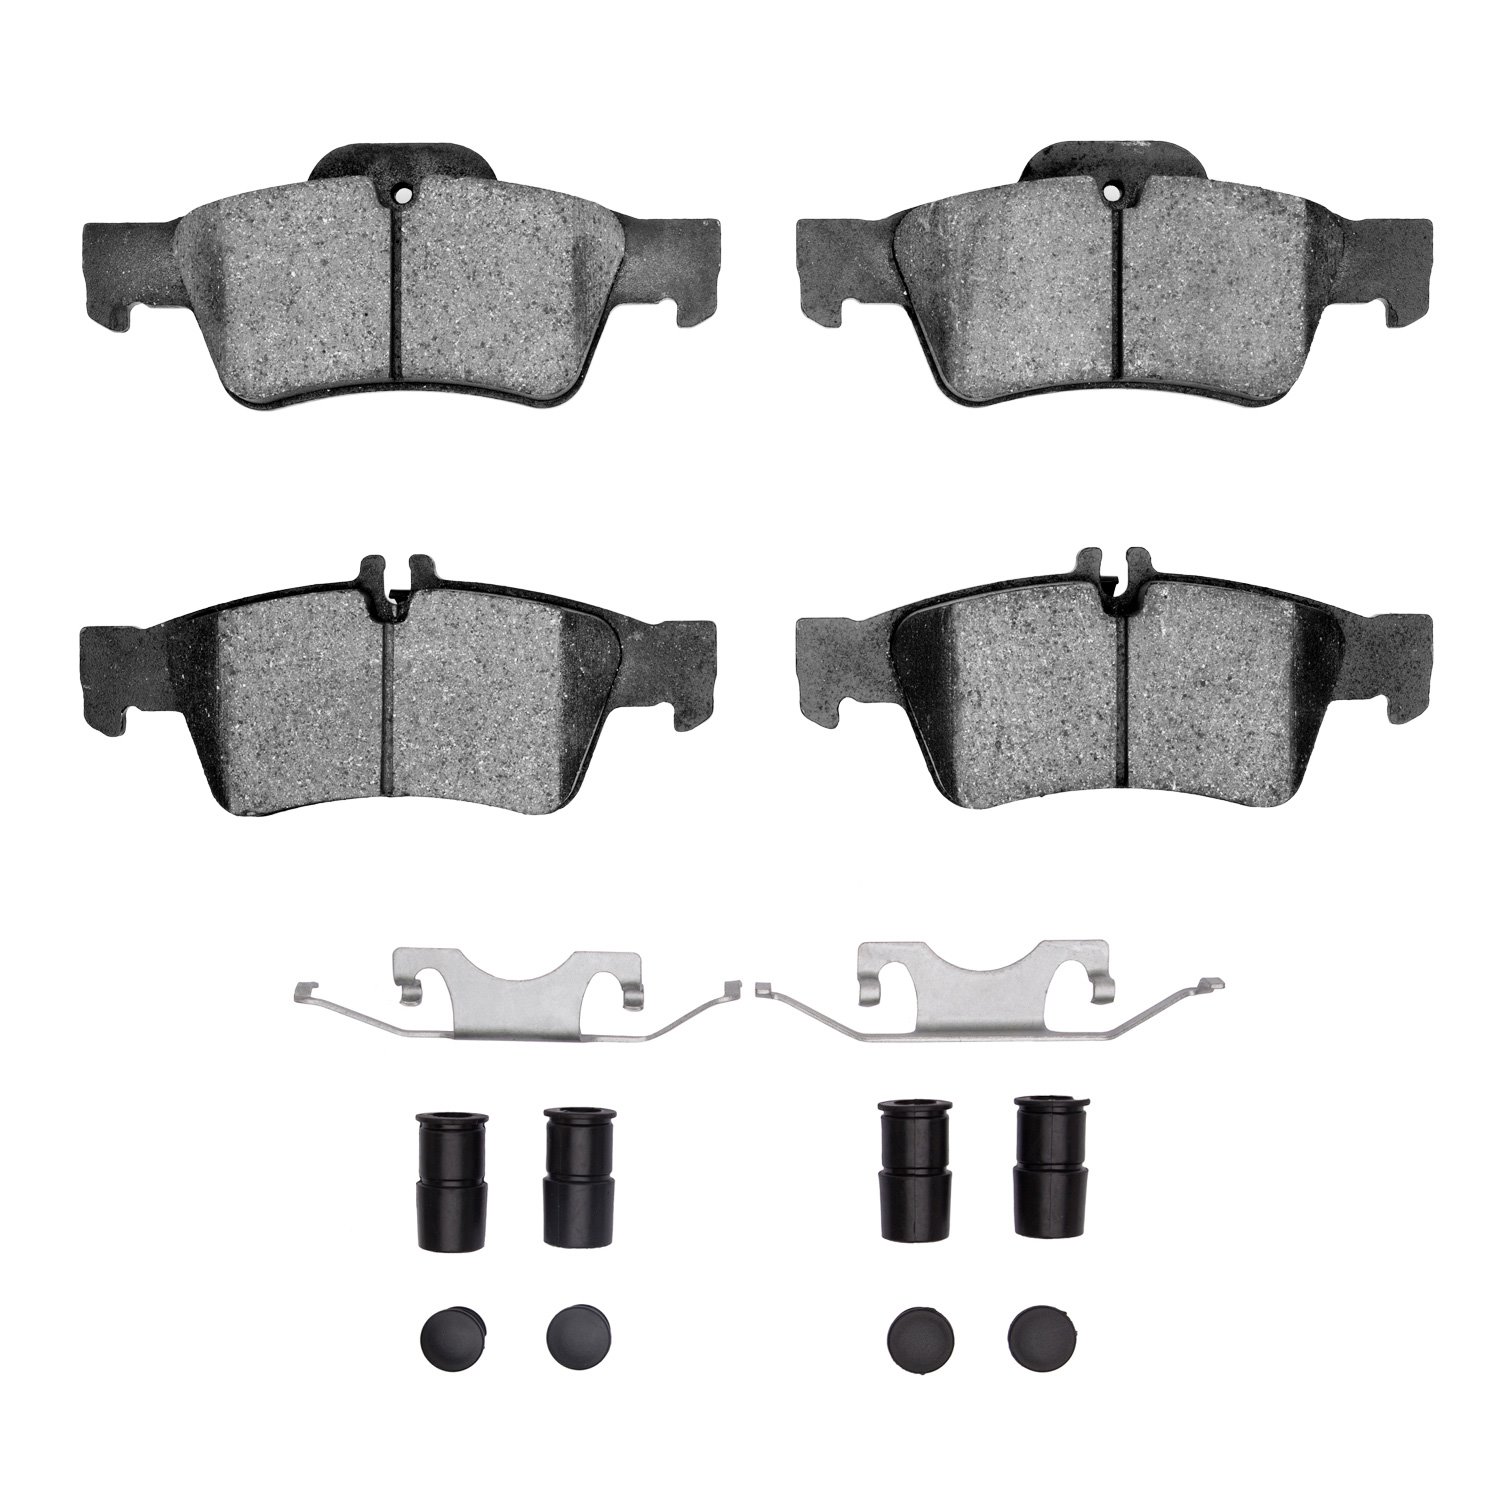 1311-0986-01 3000-Series Semi-Metallic Brake Pads & Hardware Kit, 2002-2018 Mercedes-Benz, Position: Rear